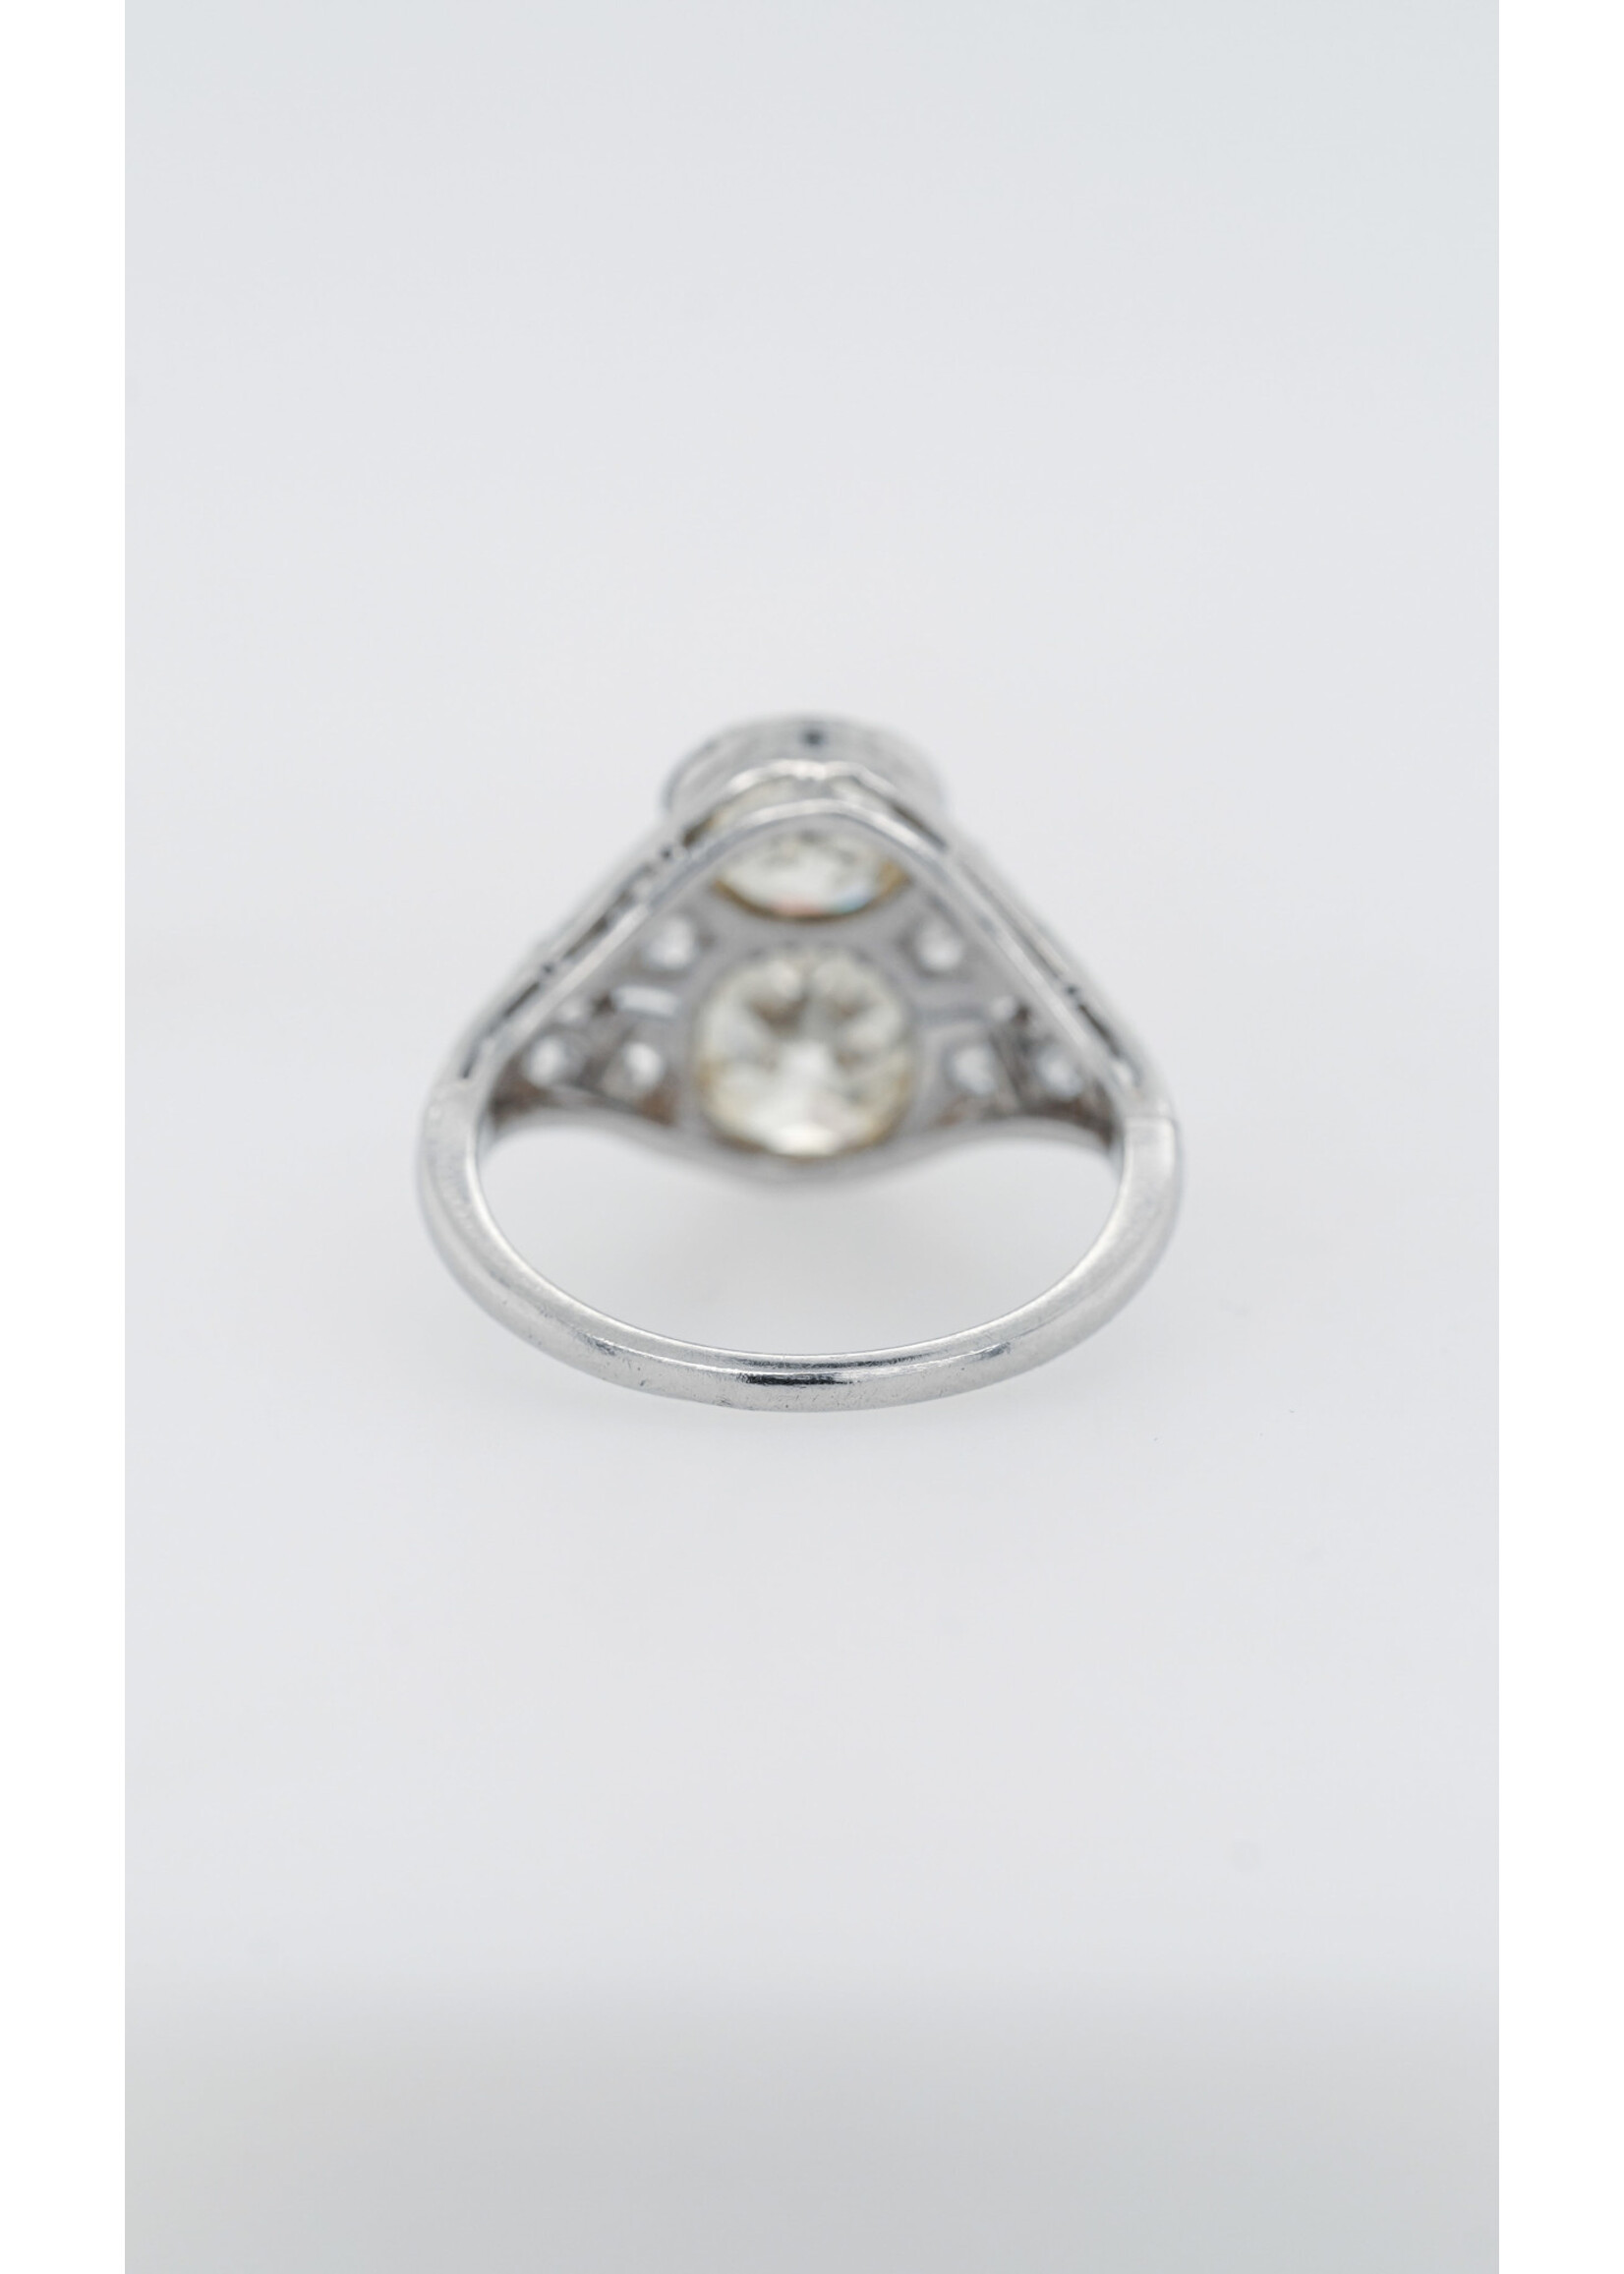 Platinum 3.11ctw Old Mine Cut Diamond Antique Ring (size 5.75)